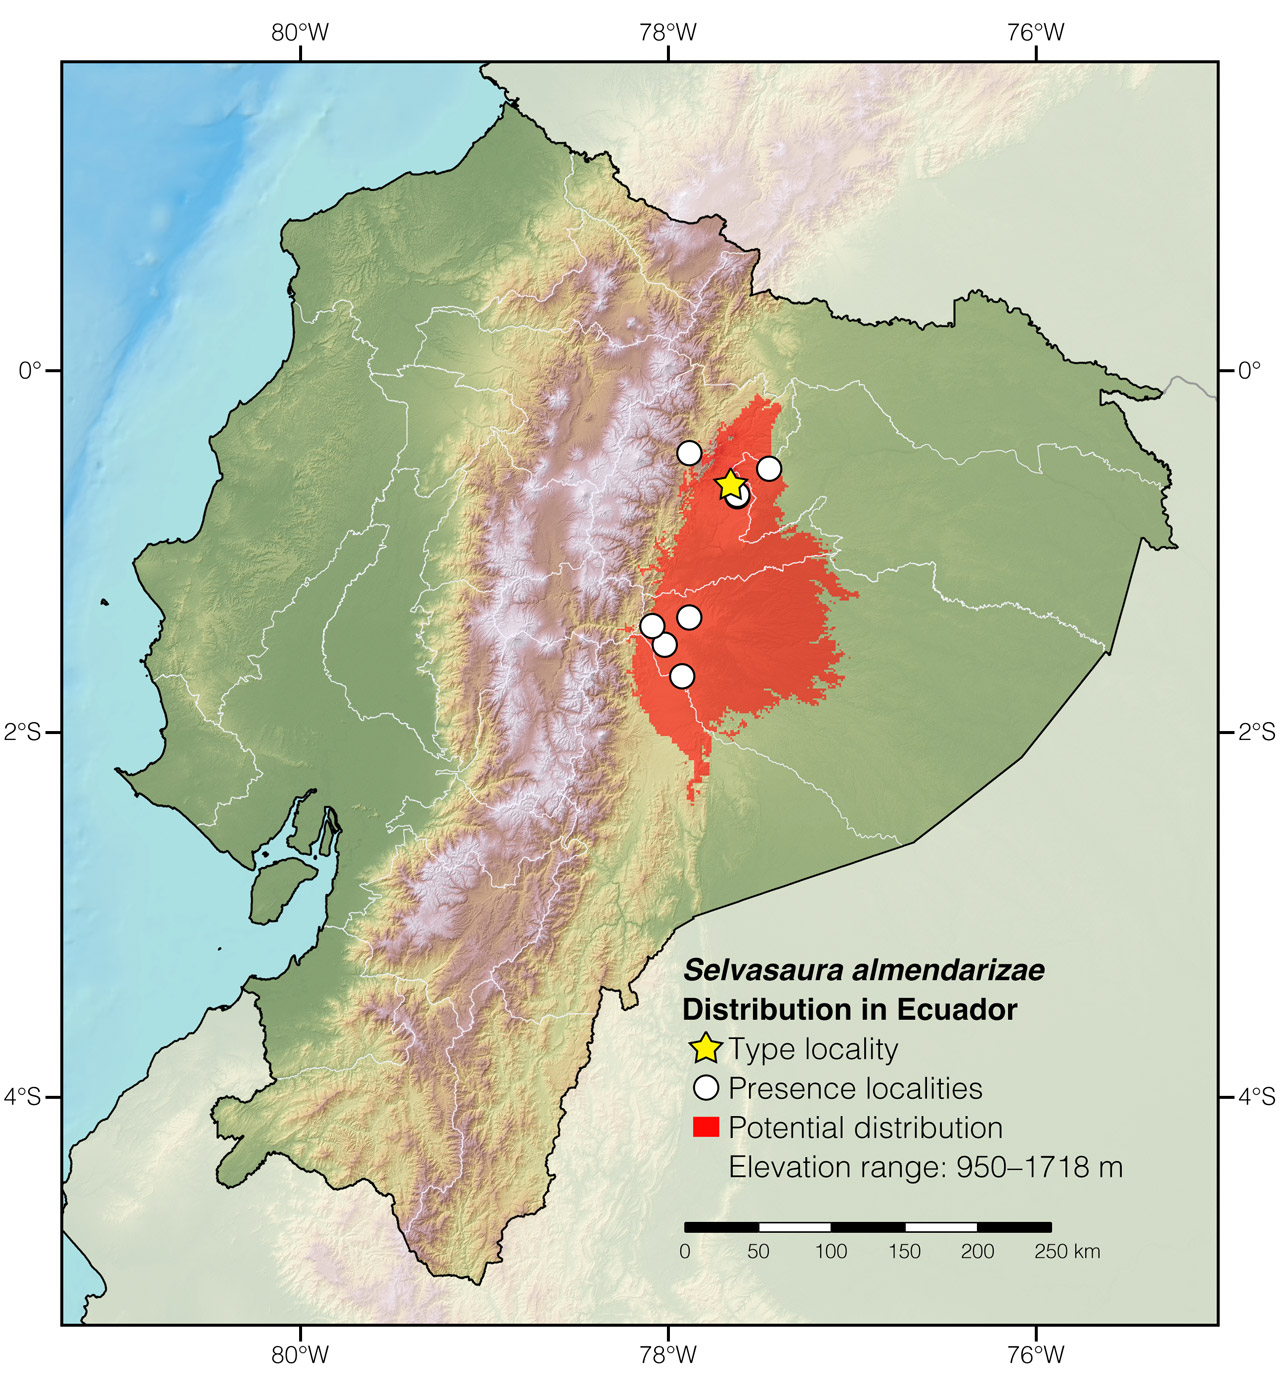 Distribution of Selvasaura almendarizae in Ecuador